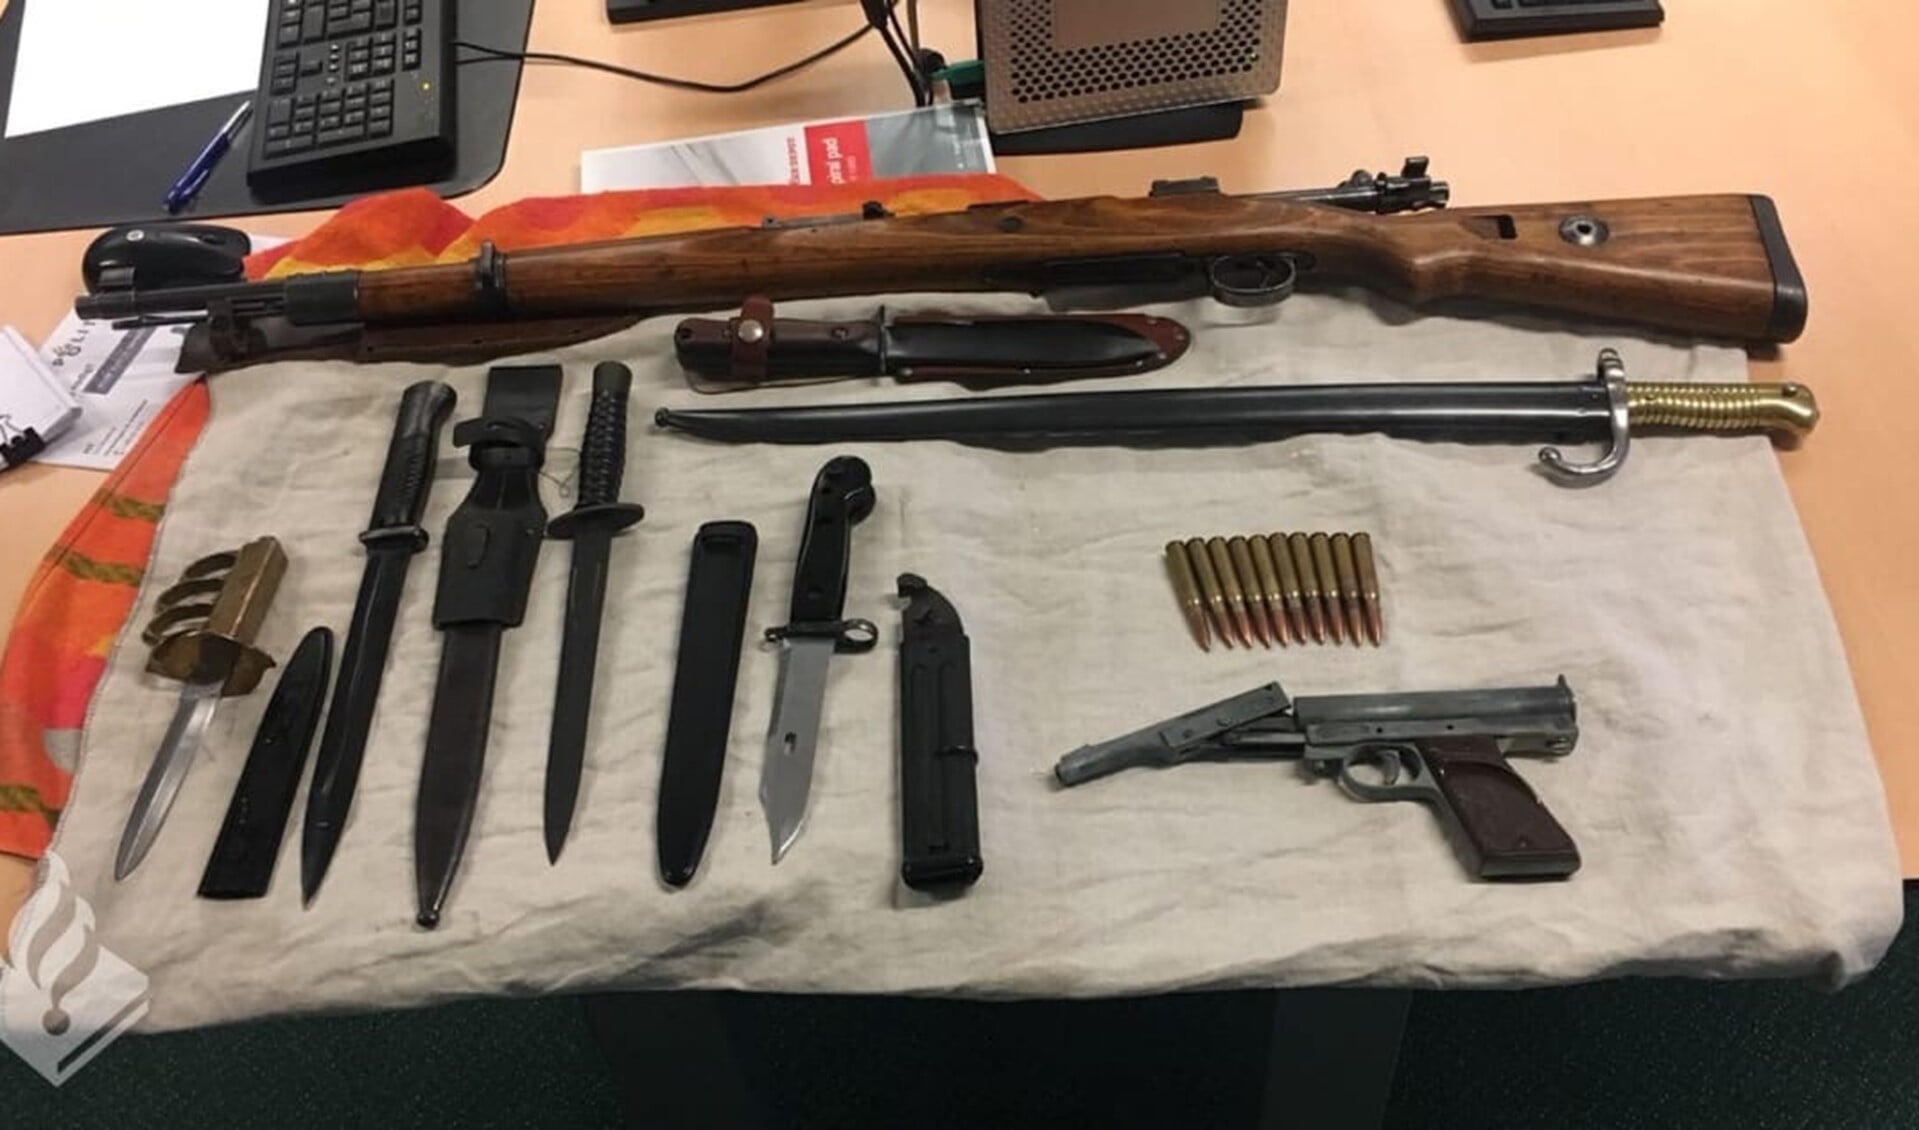 De wapens die werden gevonden (foto: politie LDVB).